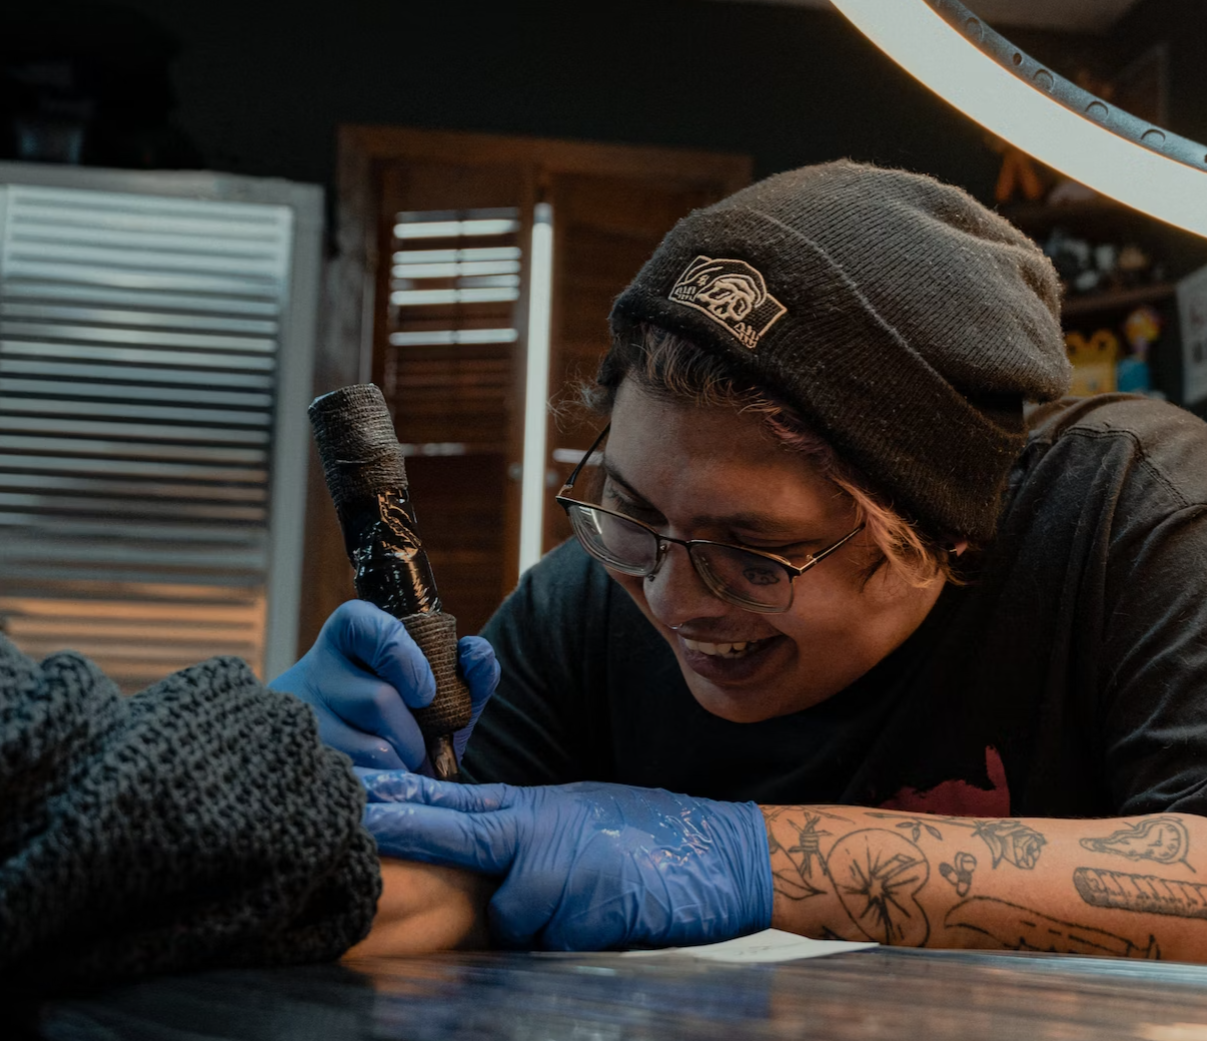 Schaumburg approves first tattoo business